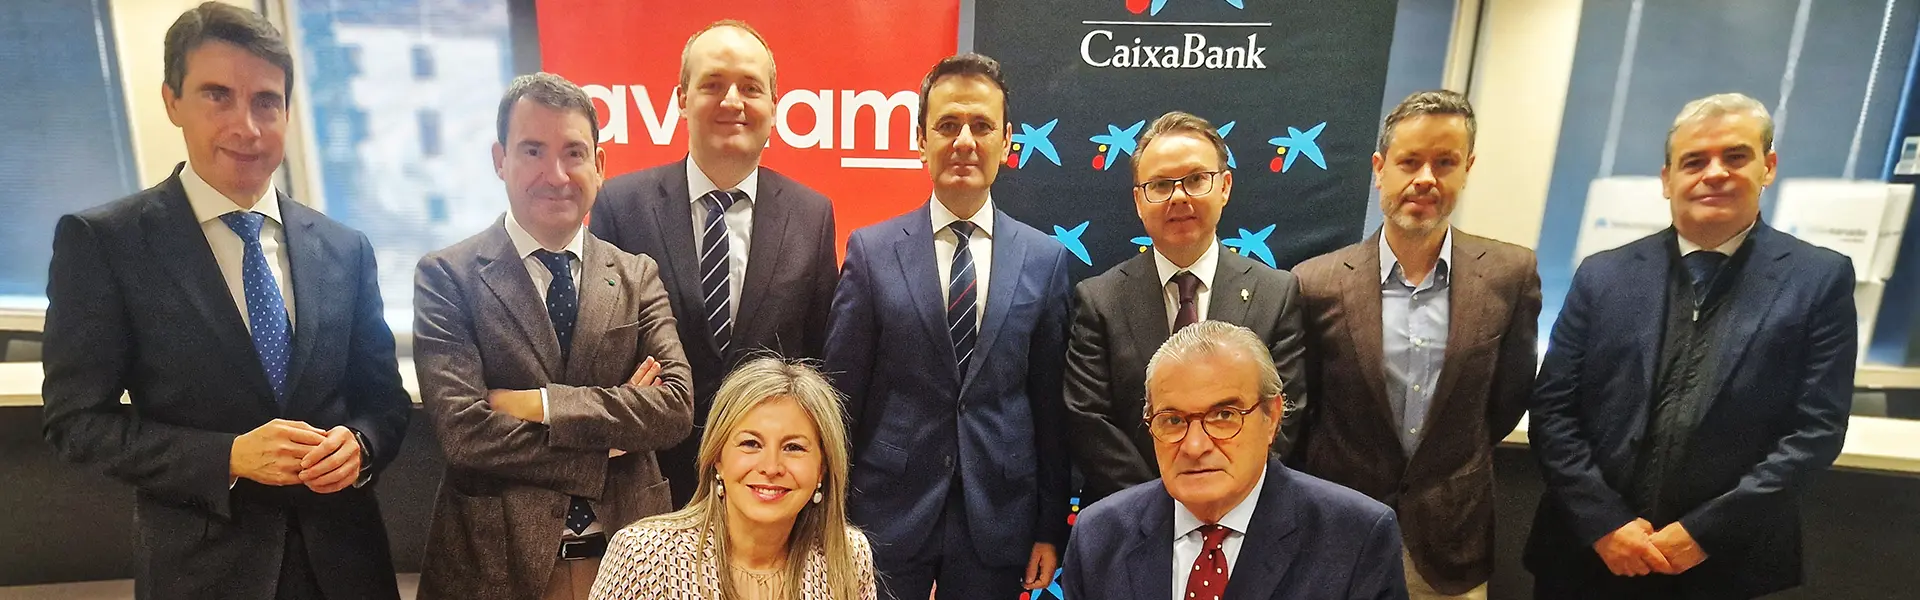 Aválam y CaixaBank refuerzan su compromiso con pymes y autónomos de la Región de Murcia con una línea de financiación de 140 millones de euros ultimas noticias cesgar